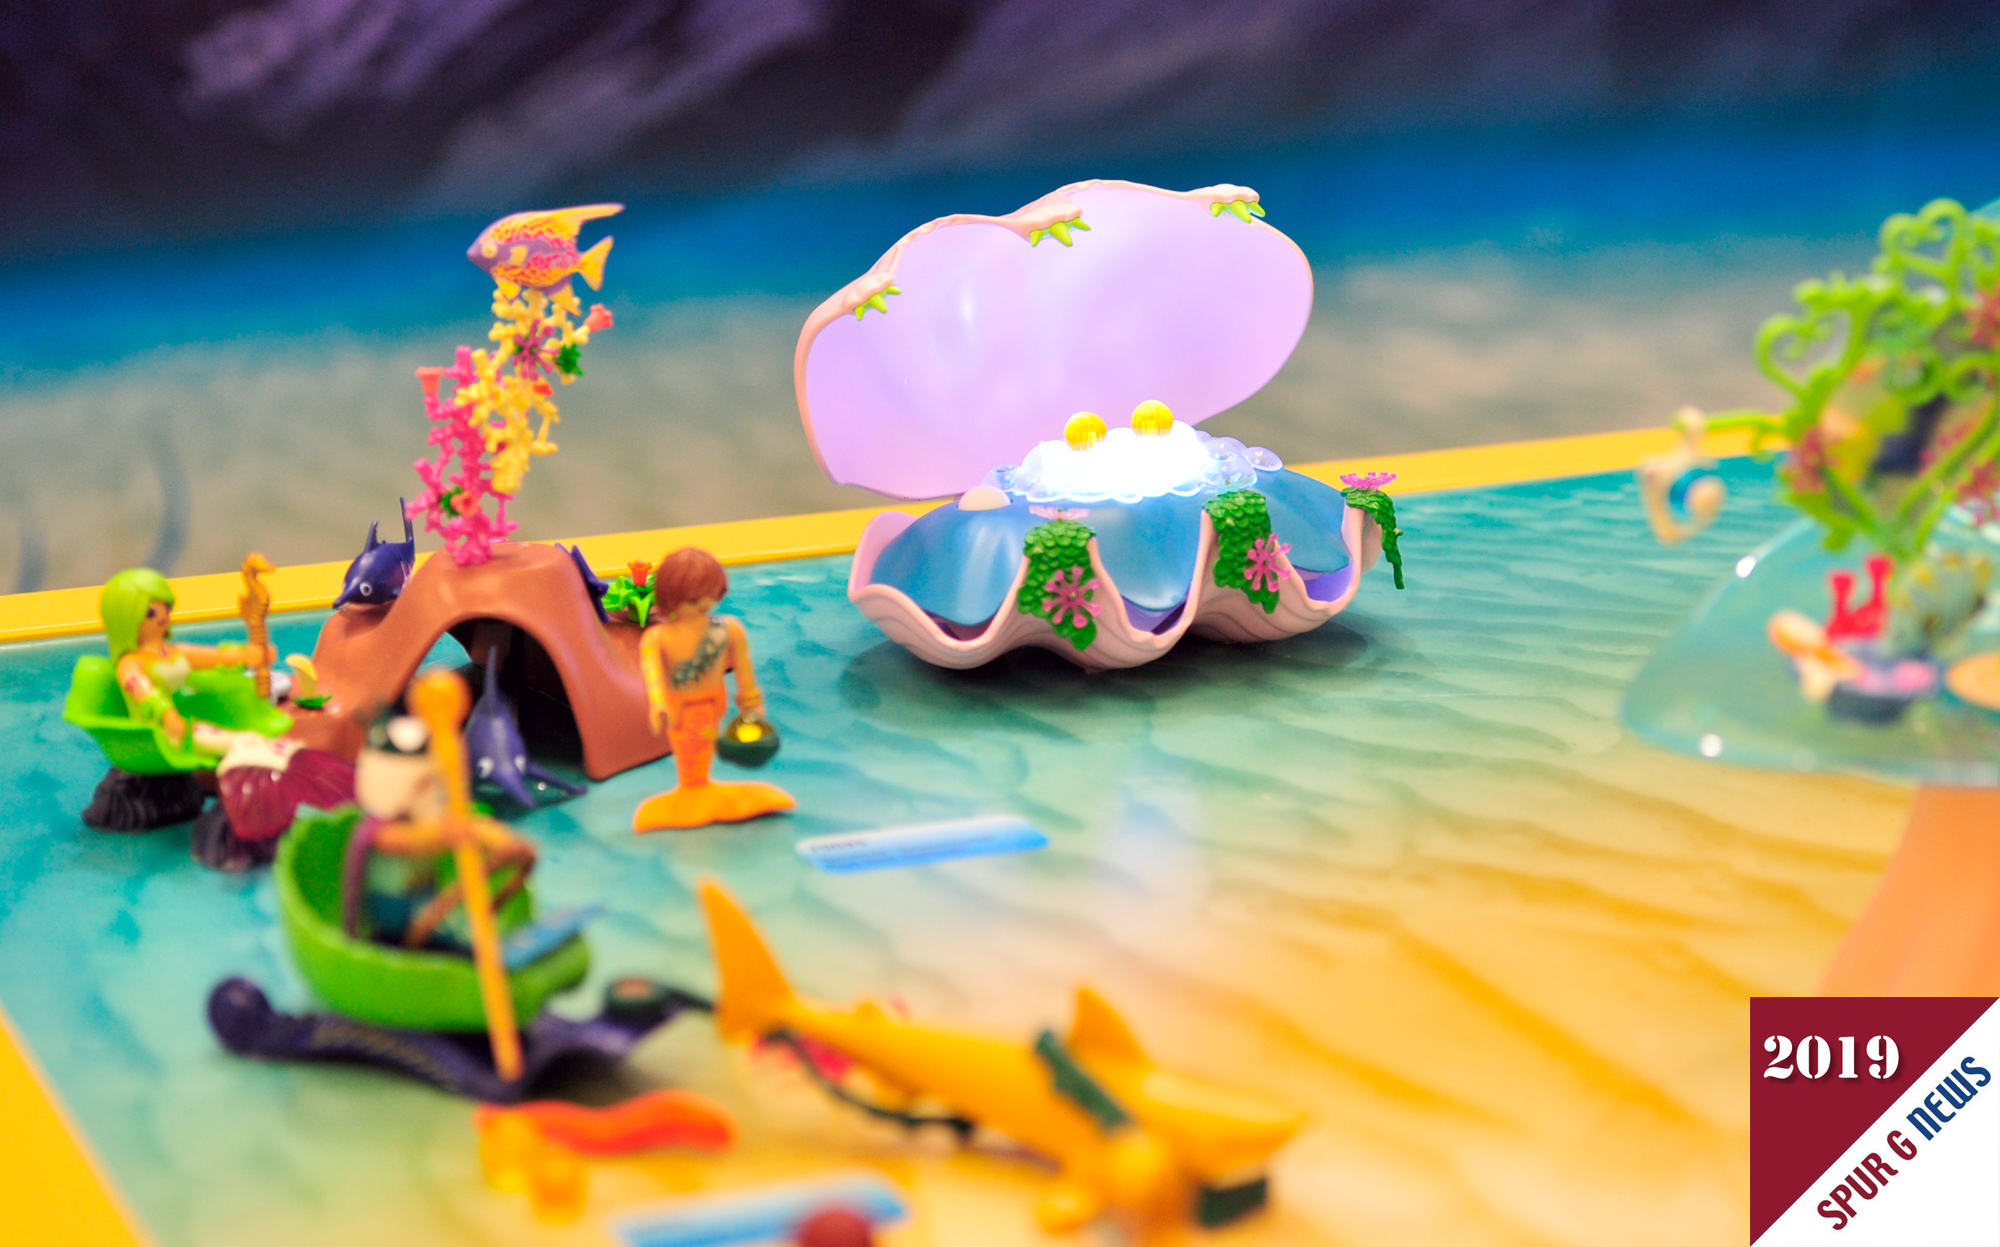 Fr den ToyAward 2019 in der Kategorie School Kids (6-10 Jahre) nominiert: Magical Mermaid World von Playmobil. Hier geht es um Meerjungfrauen und Meerjungmnner die in beleuchteten Muscheln Perlen vorfinden. Diese knnen dann ber eine Bahn von oben in die Unterwasserwelt mit Lichteffekten gerollt werden. Besonderheit an den Meerjungfrauen ist die abklappbare "Schwanzflosse". Somit kann die Meerjungfrau auch auf dem Grund gut stehen. 